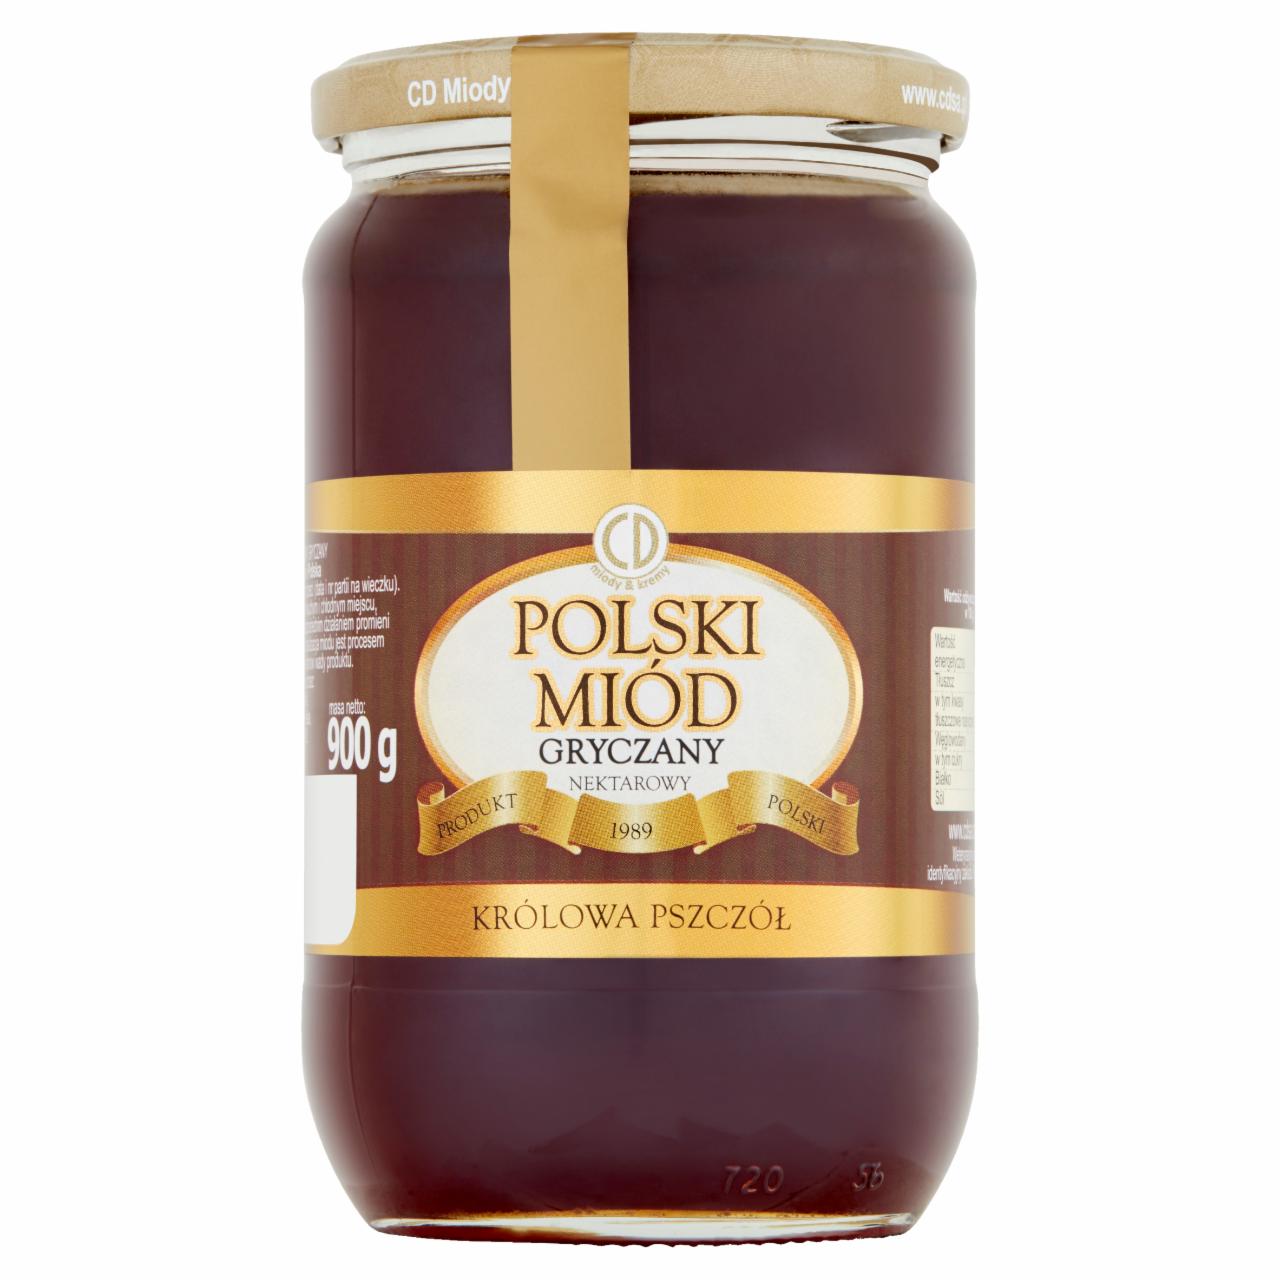 Zdjęcia - Królowa Pszczół Polski miód gryczany nektarowy 900 g